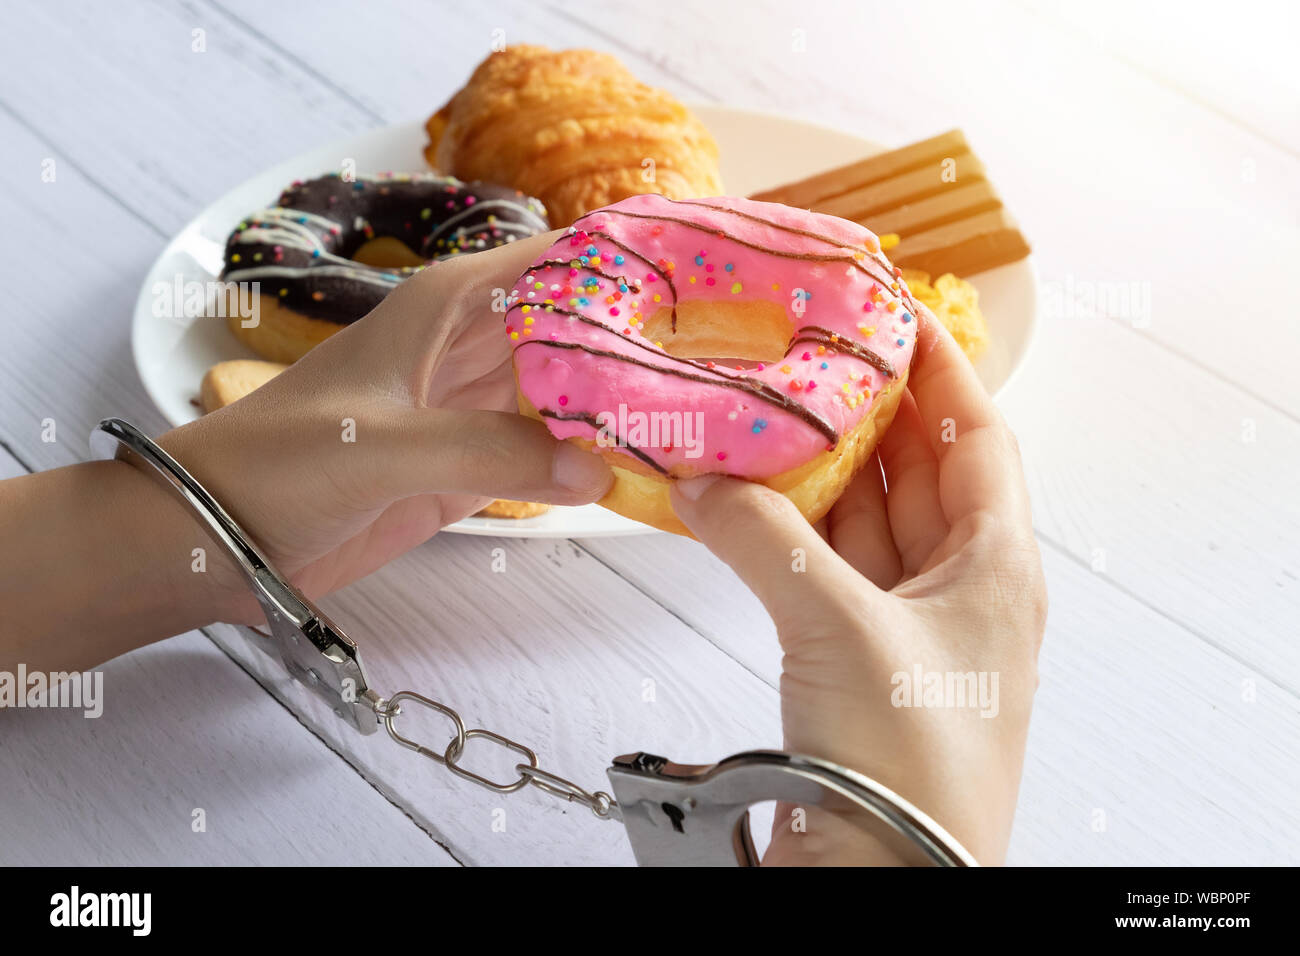 Kalorien, Ernährung und Gewichtsabnahme Konzept. nach oben Blick auf zwei Händen war Kontrolle durch Handschellen, holding Donut aus weißen Teller auf Esstisch Stockfoto